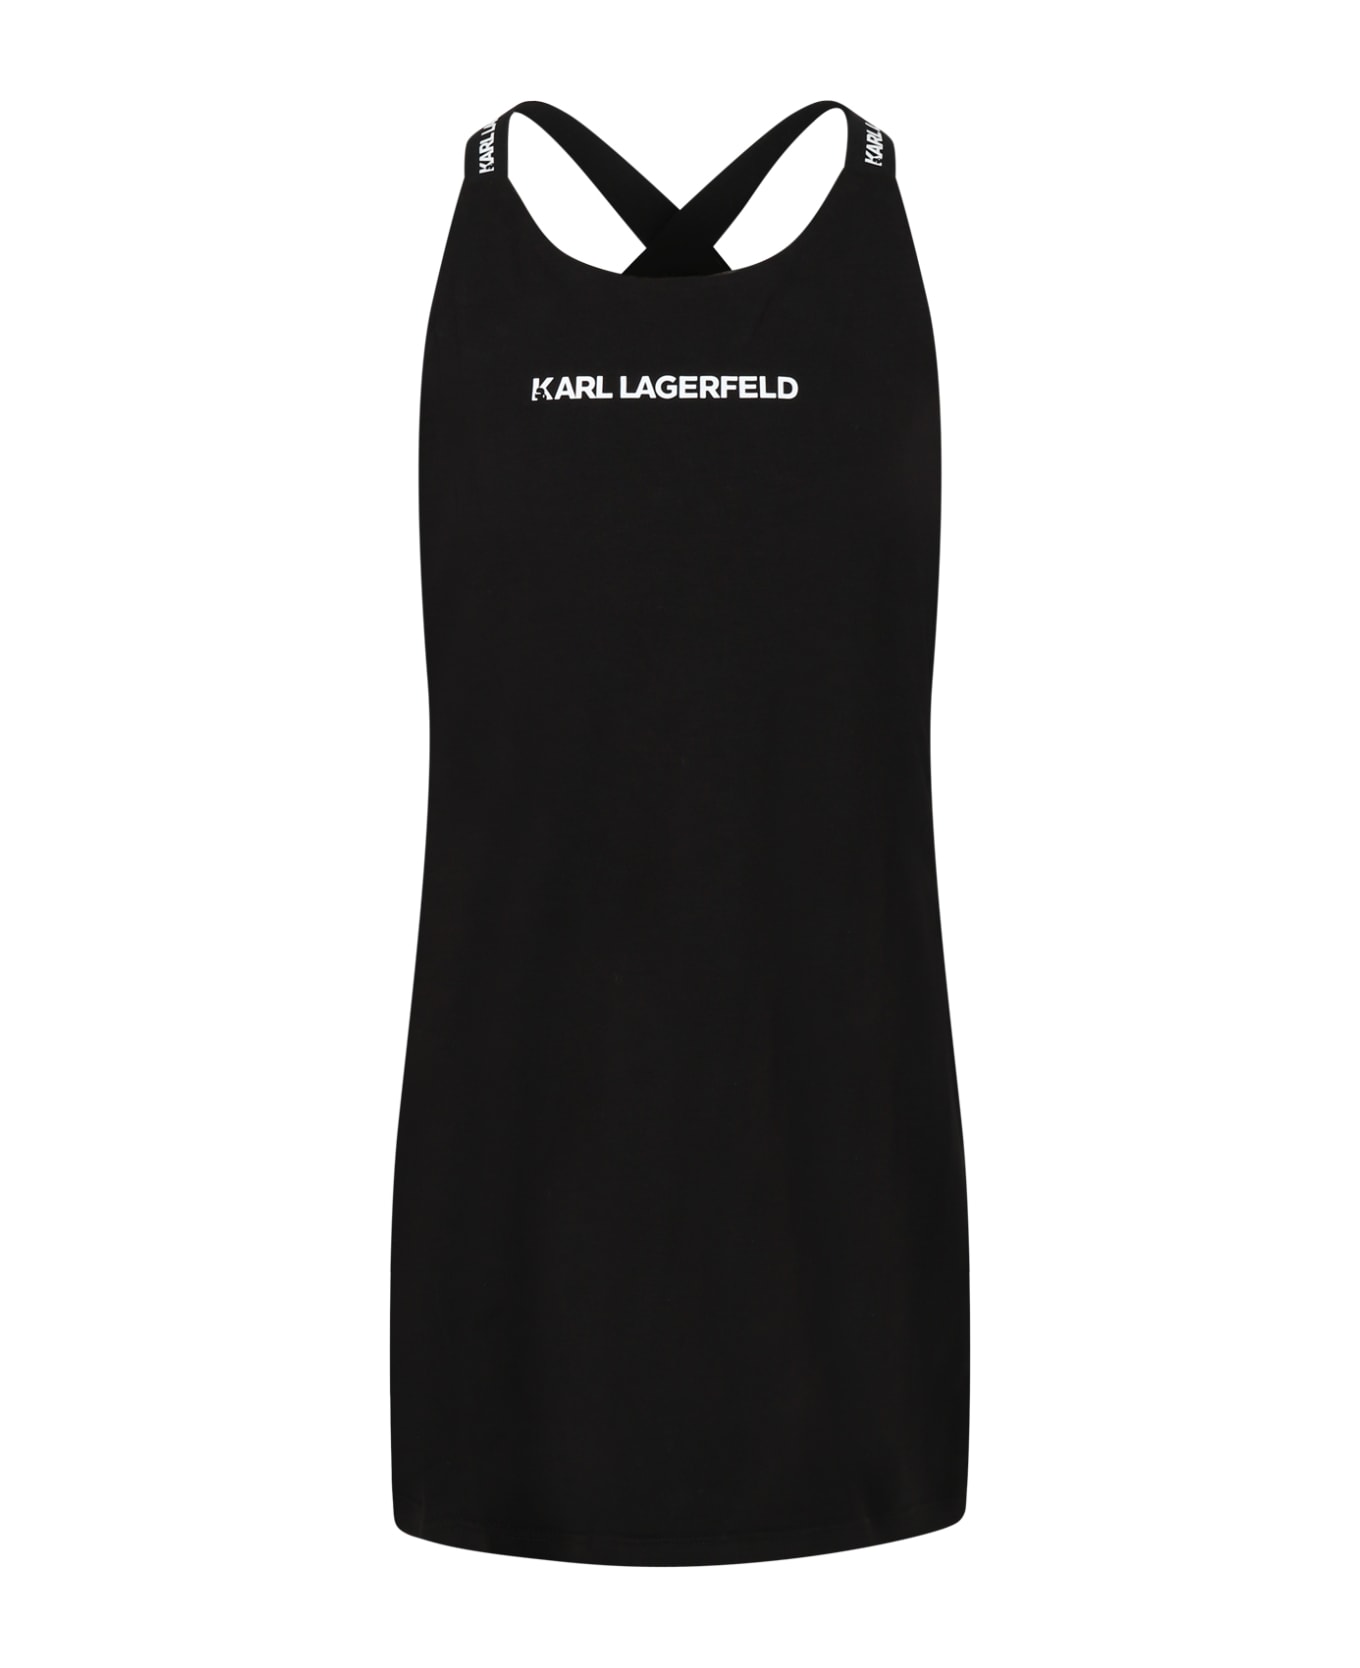 Karl Lagerfeld Kids Black Dress For Girl With Logo - BLACK